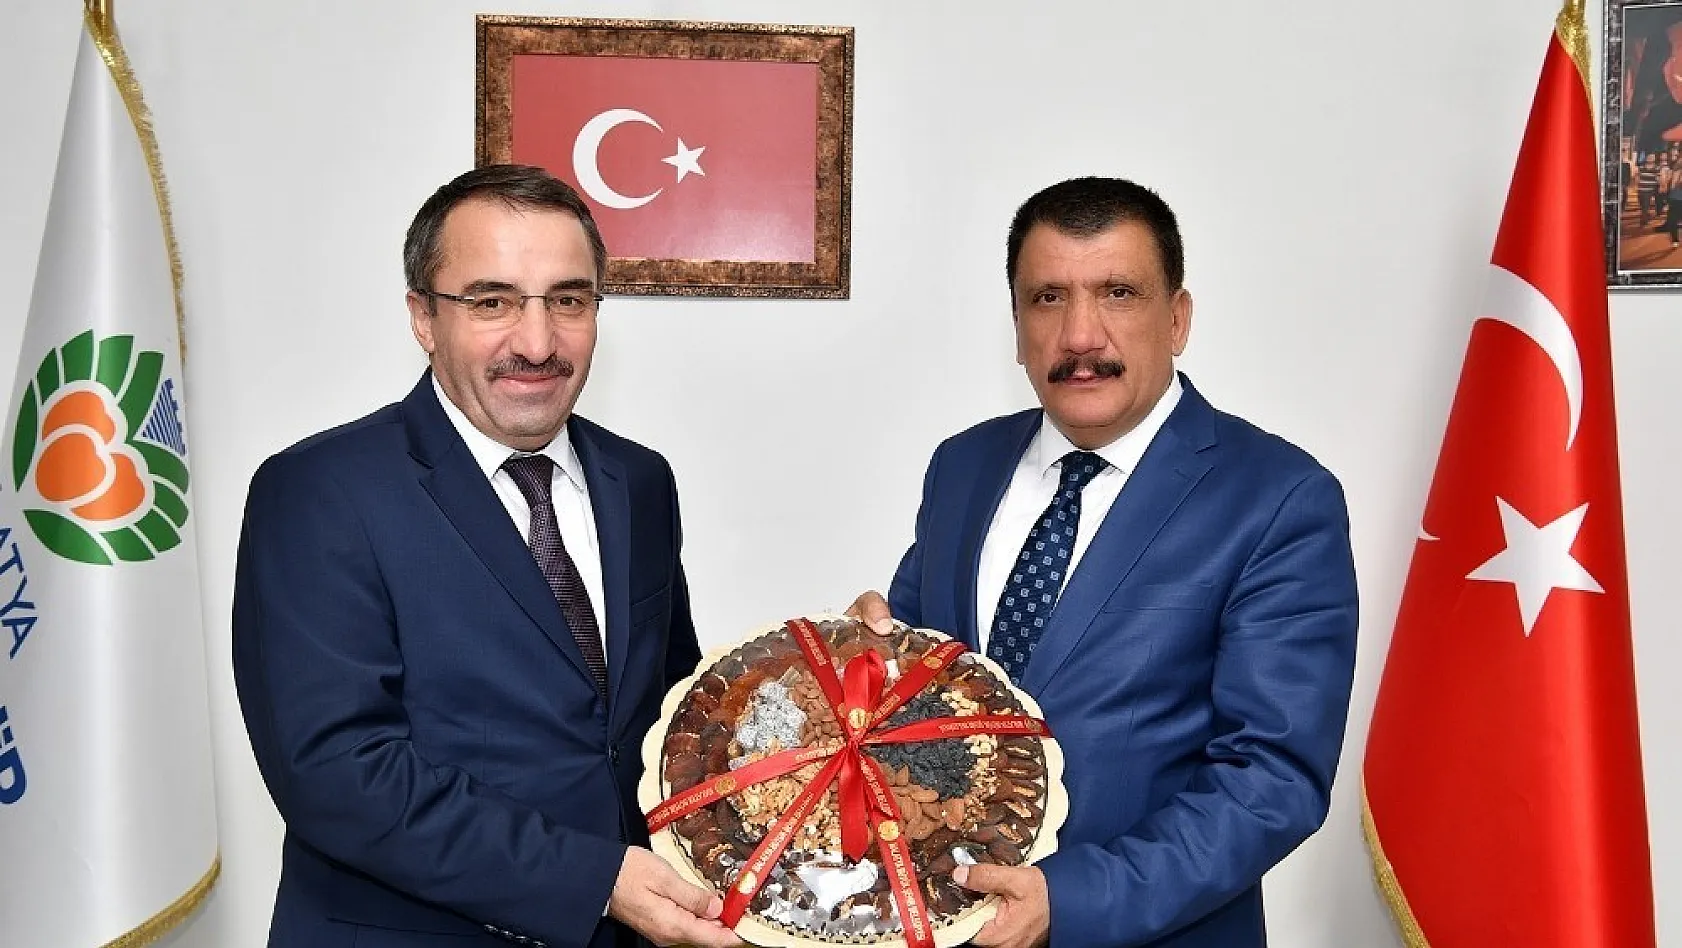 Kamu Hastaneleri Genel Müdürü Ataseven'den Başkan Gürkan'a ziyaret 